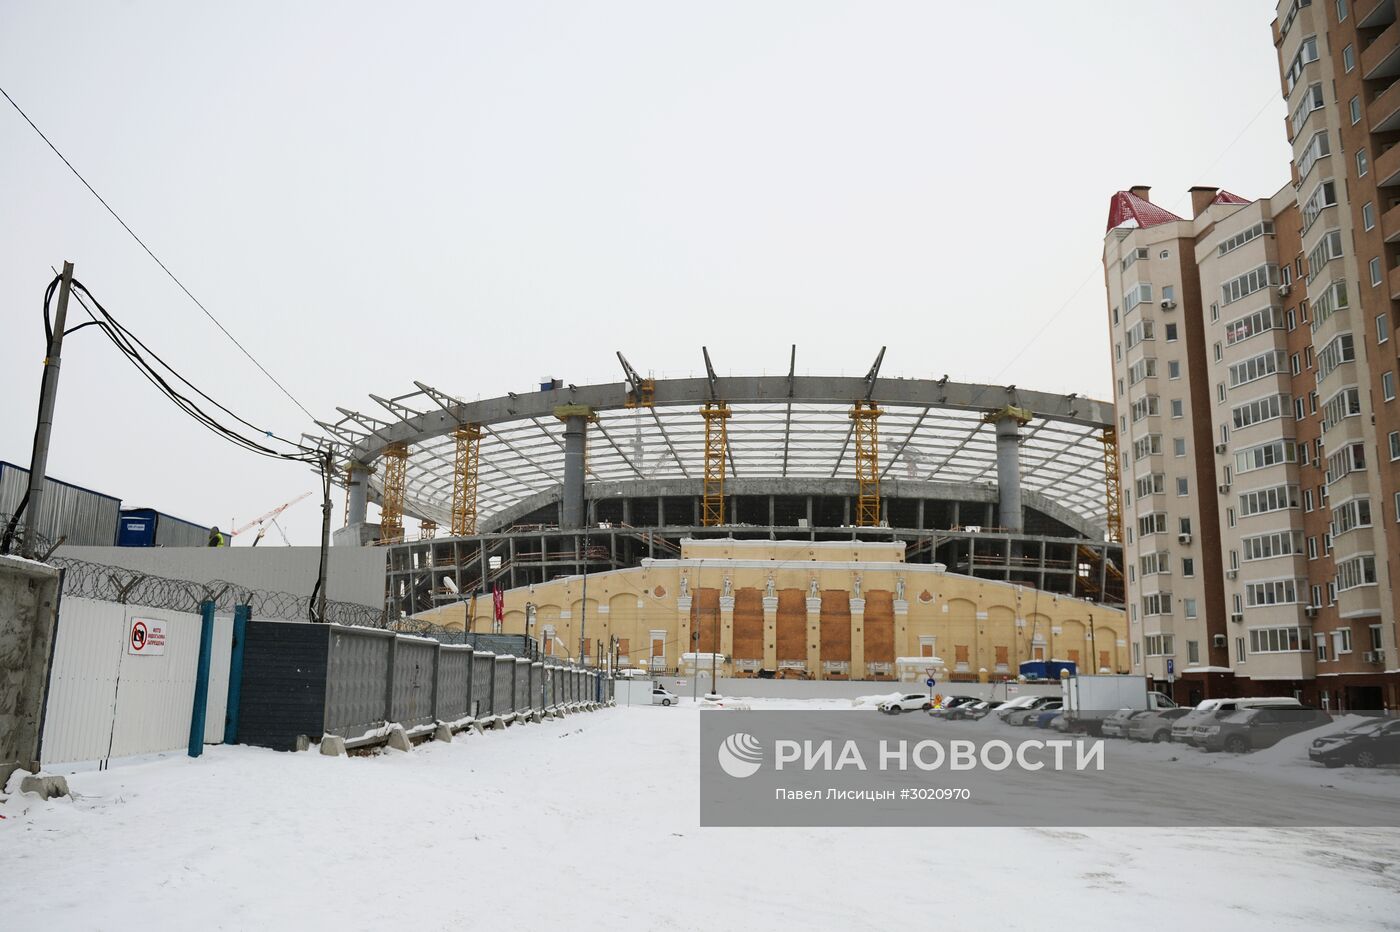 В. Мутко посетил реконструкцию стадиона "Центральный" в Екатеринбурге